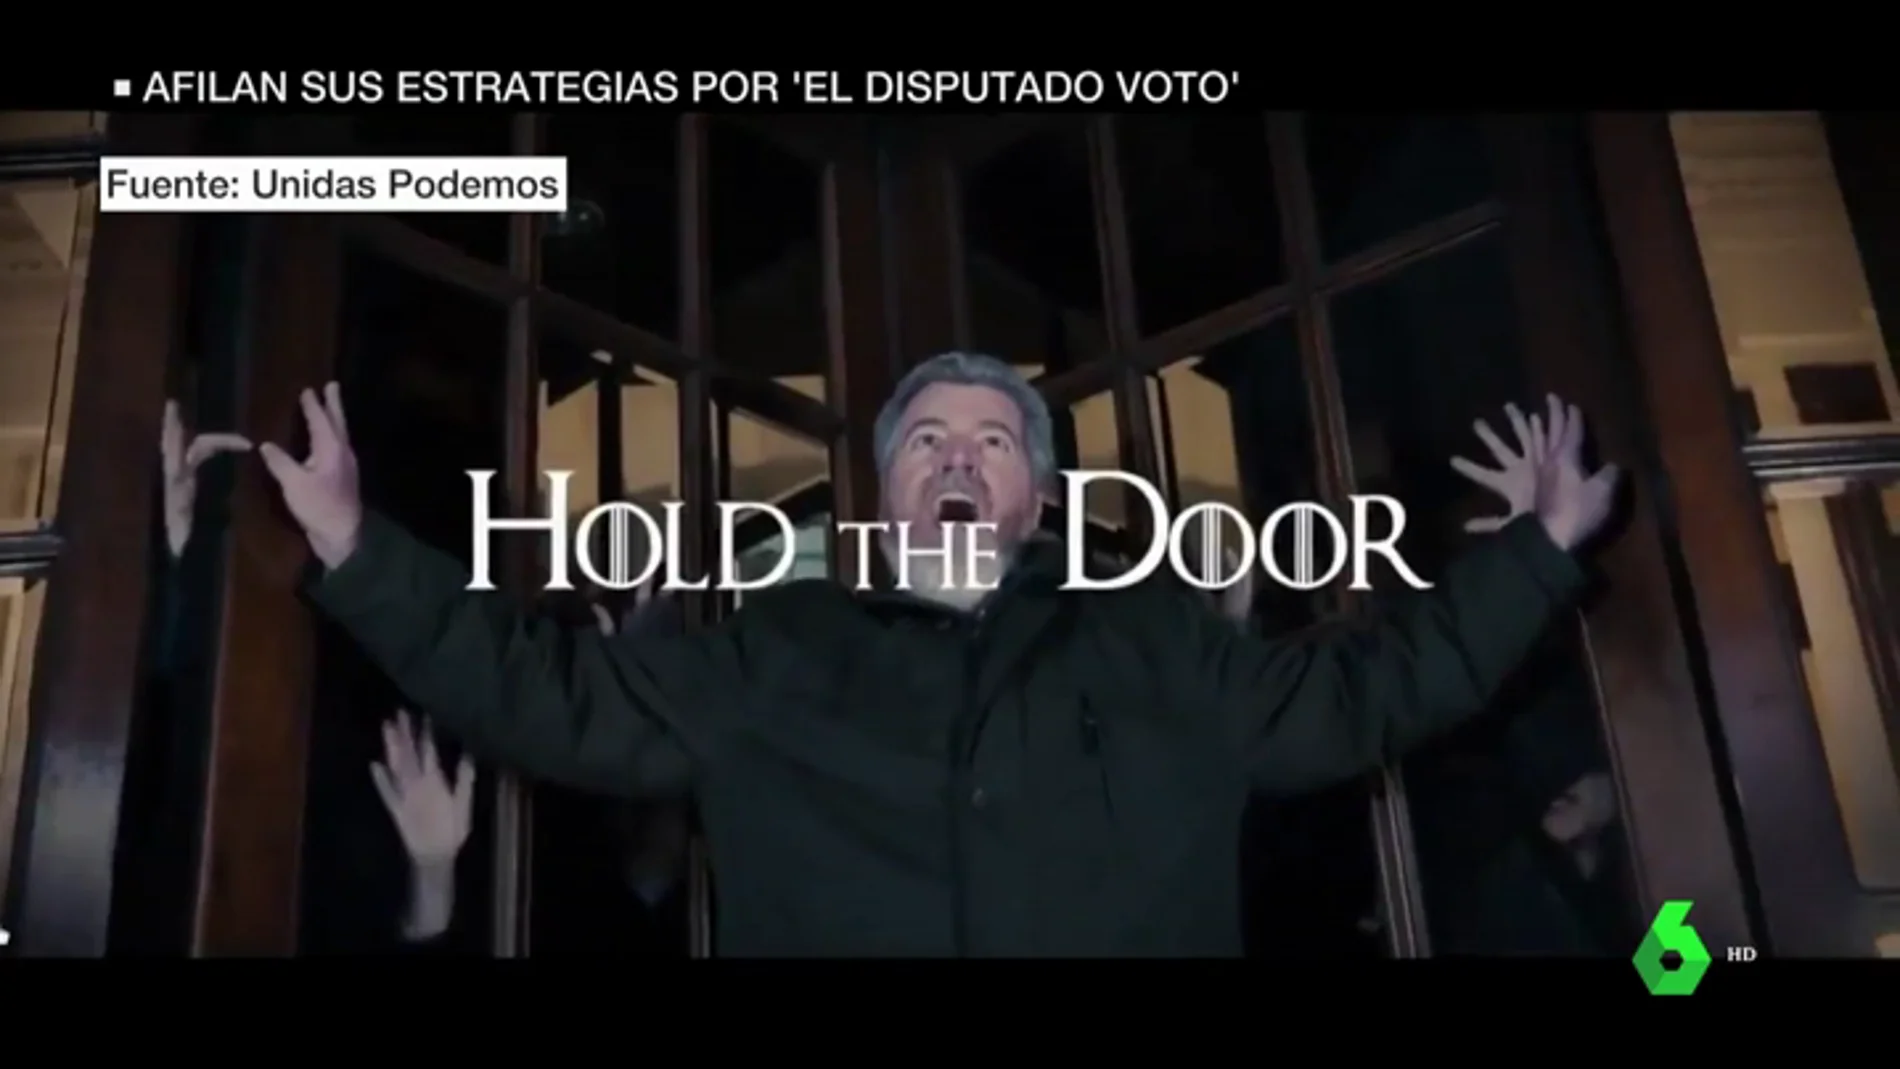 Hasta Juego de Tronos entra en campaña por el disputado voto: esta vez, para cerrar puertas giratorias 